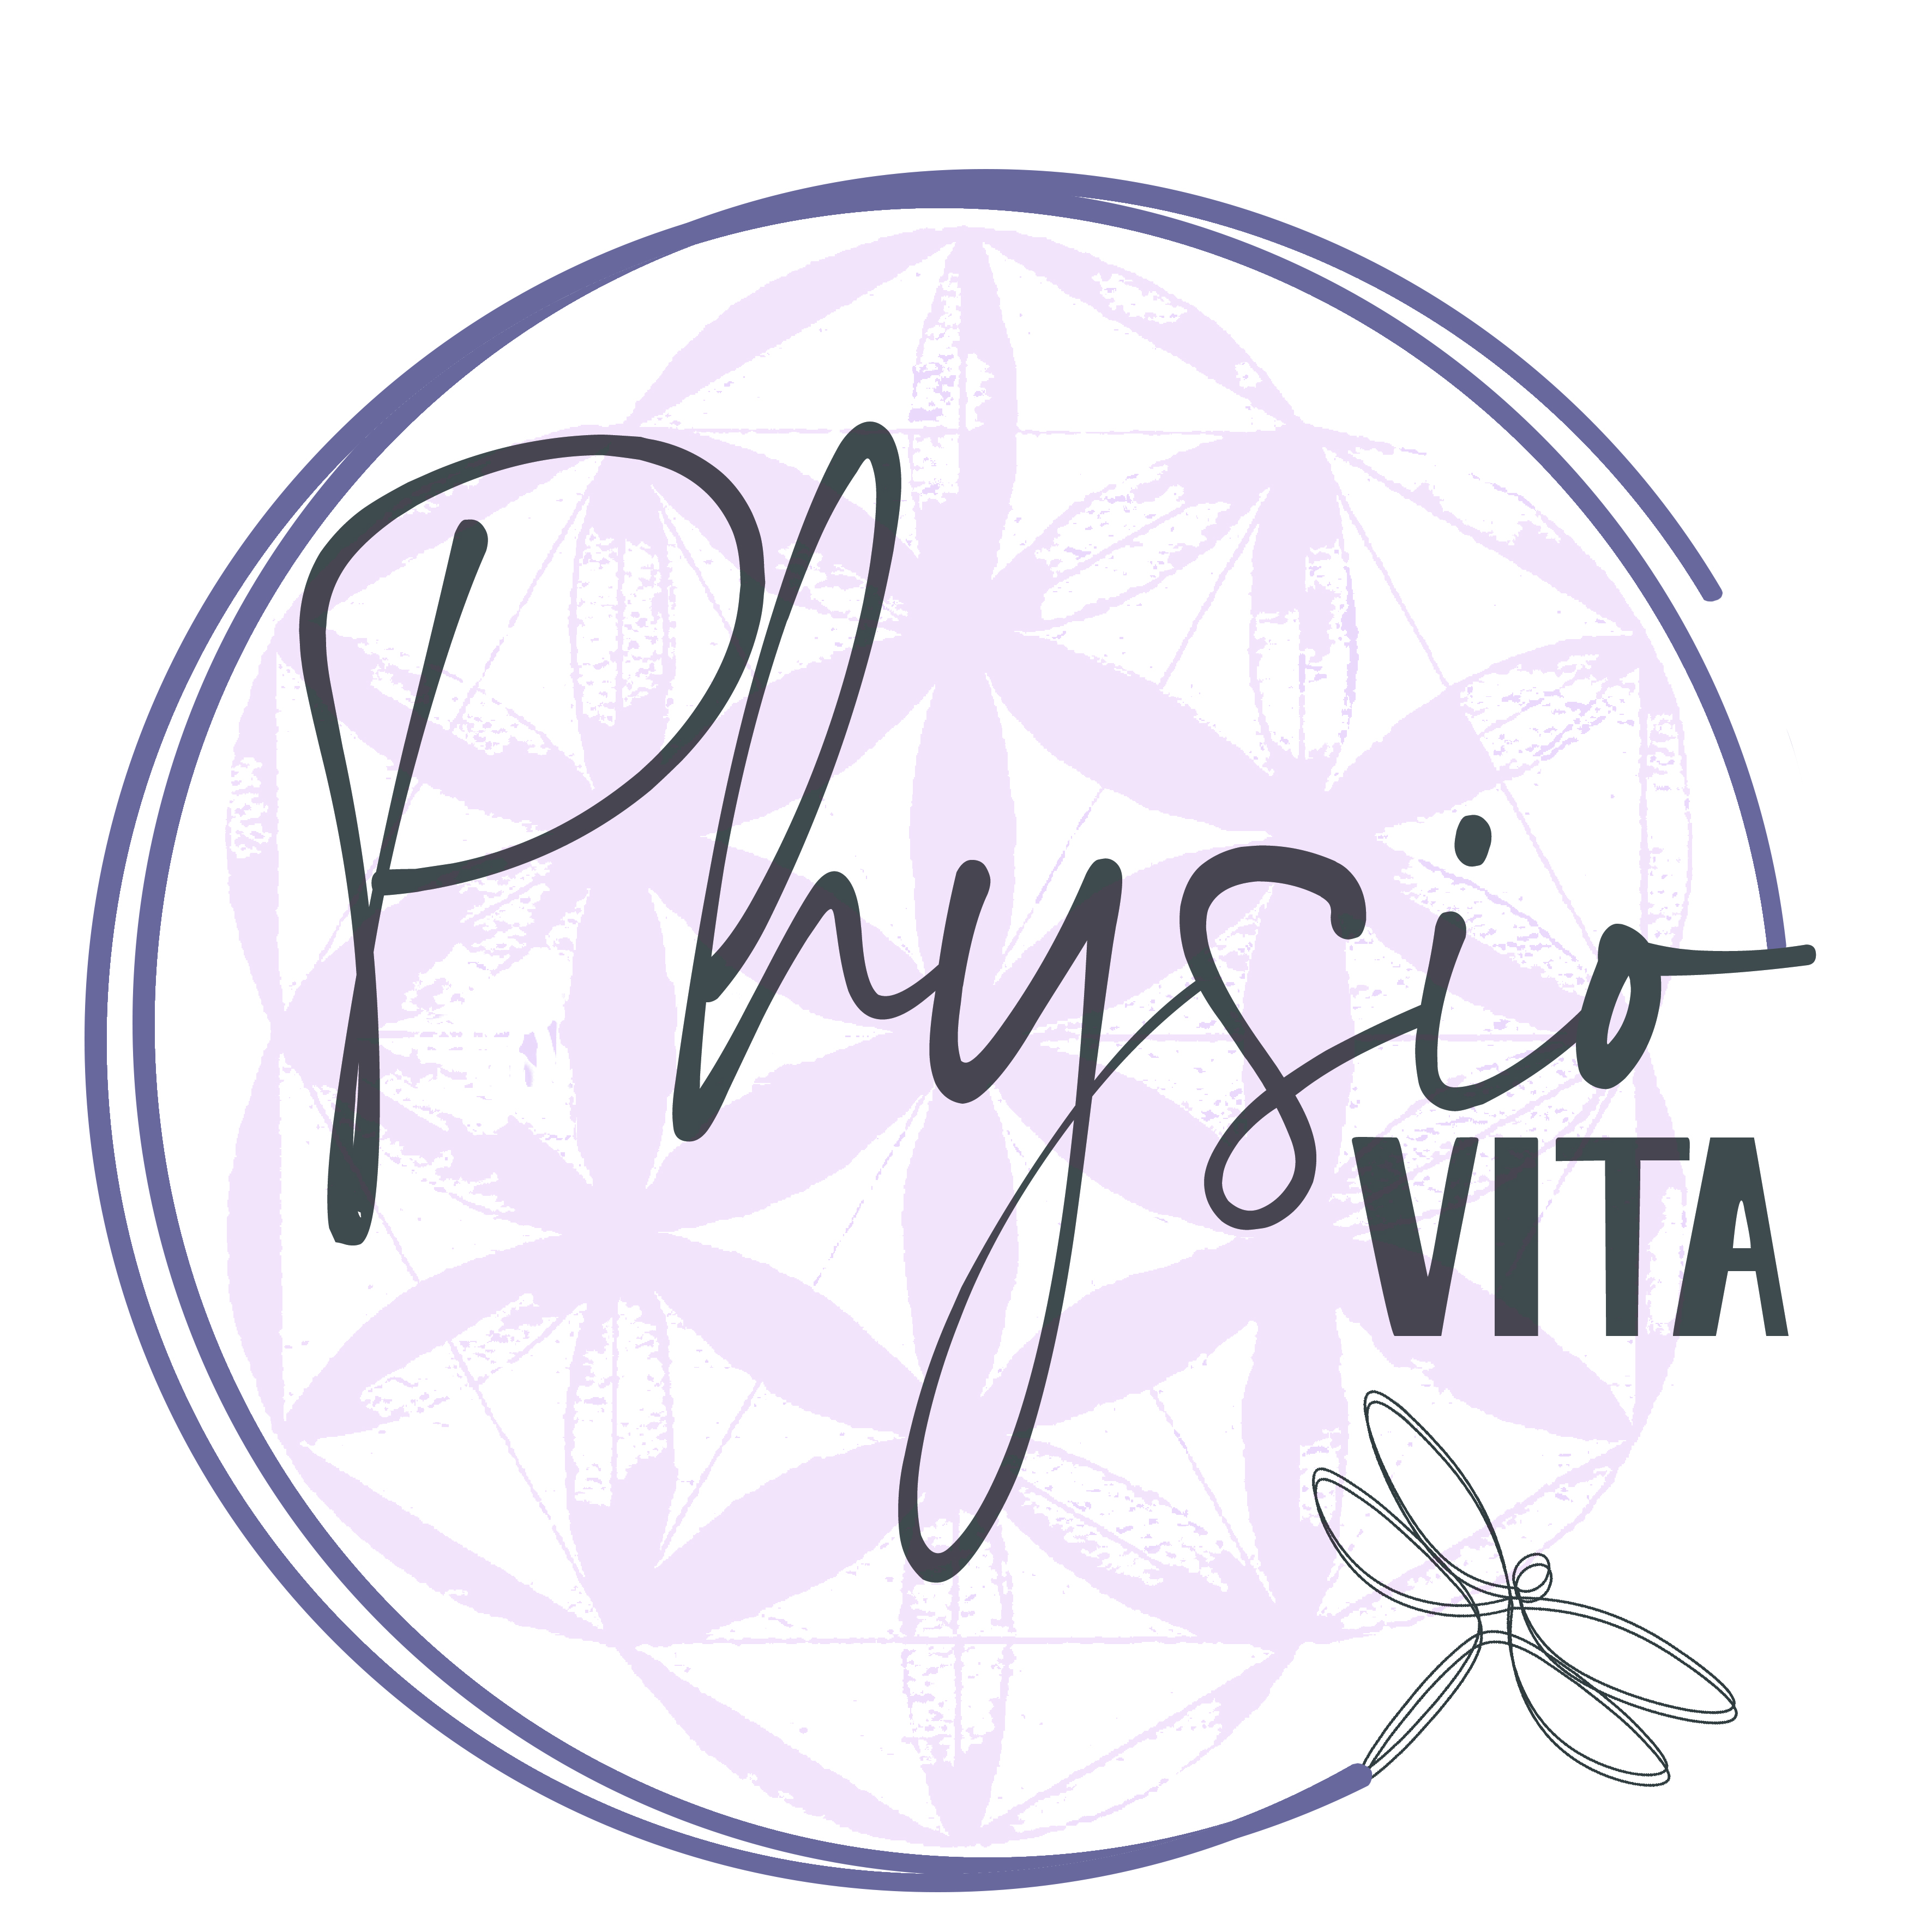 Physio Vita